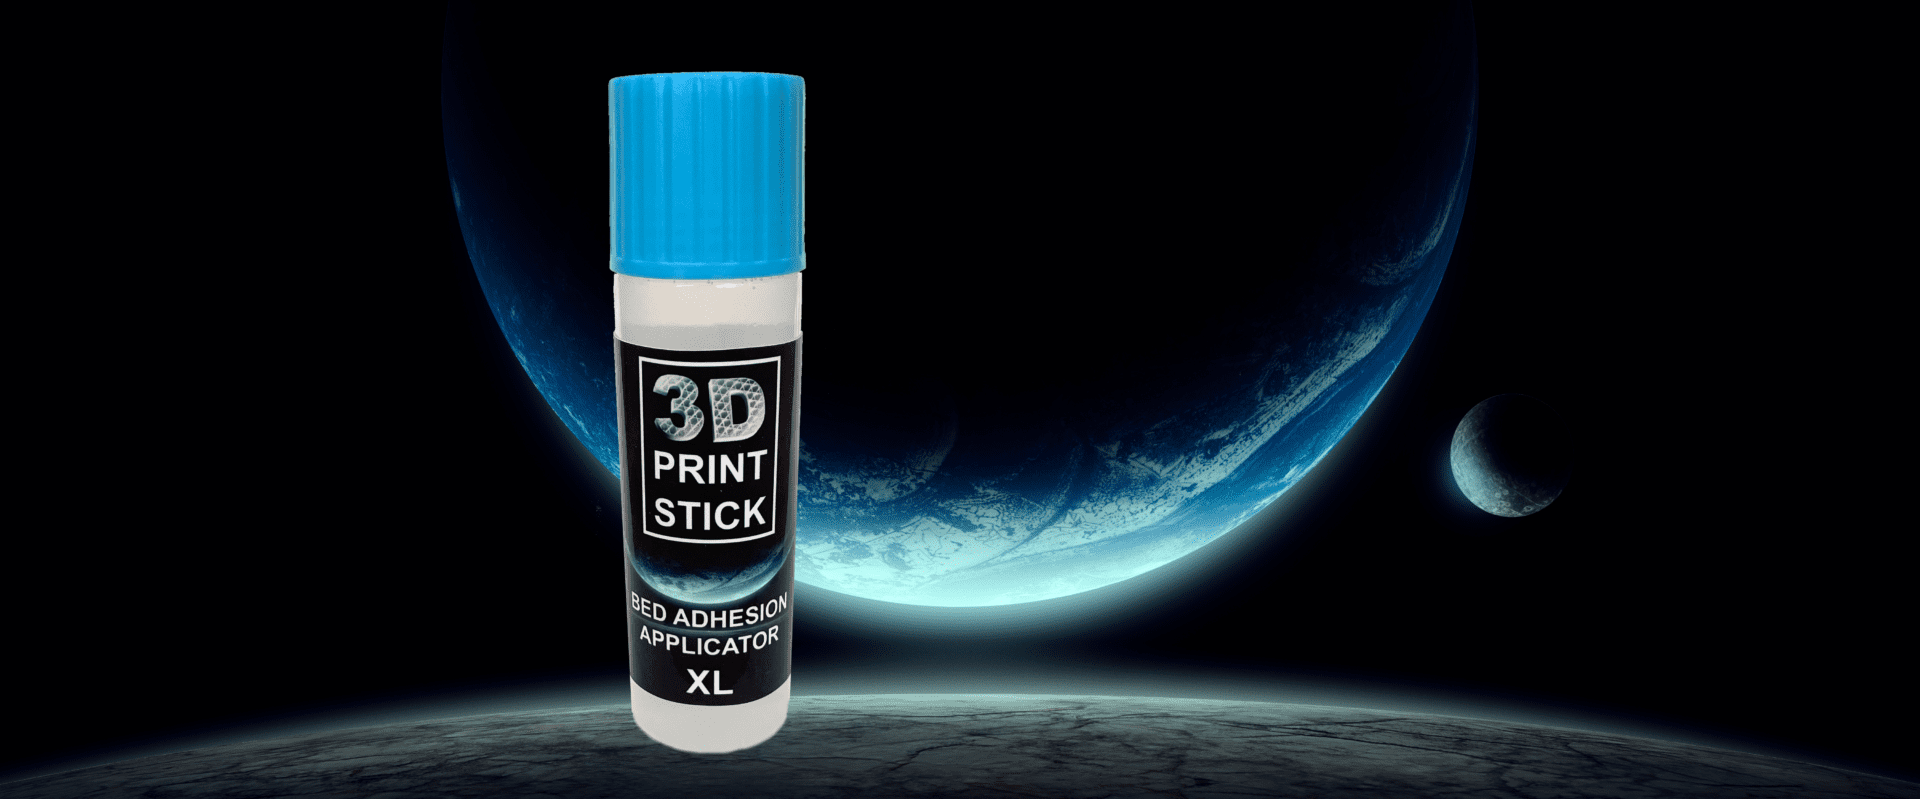 3D Print Stick in Space